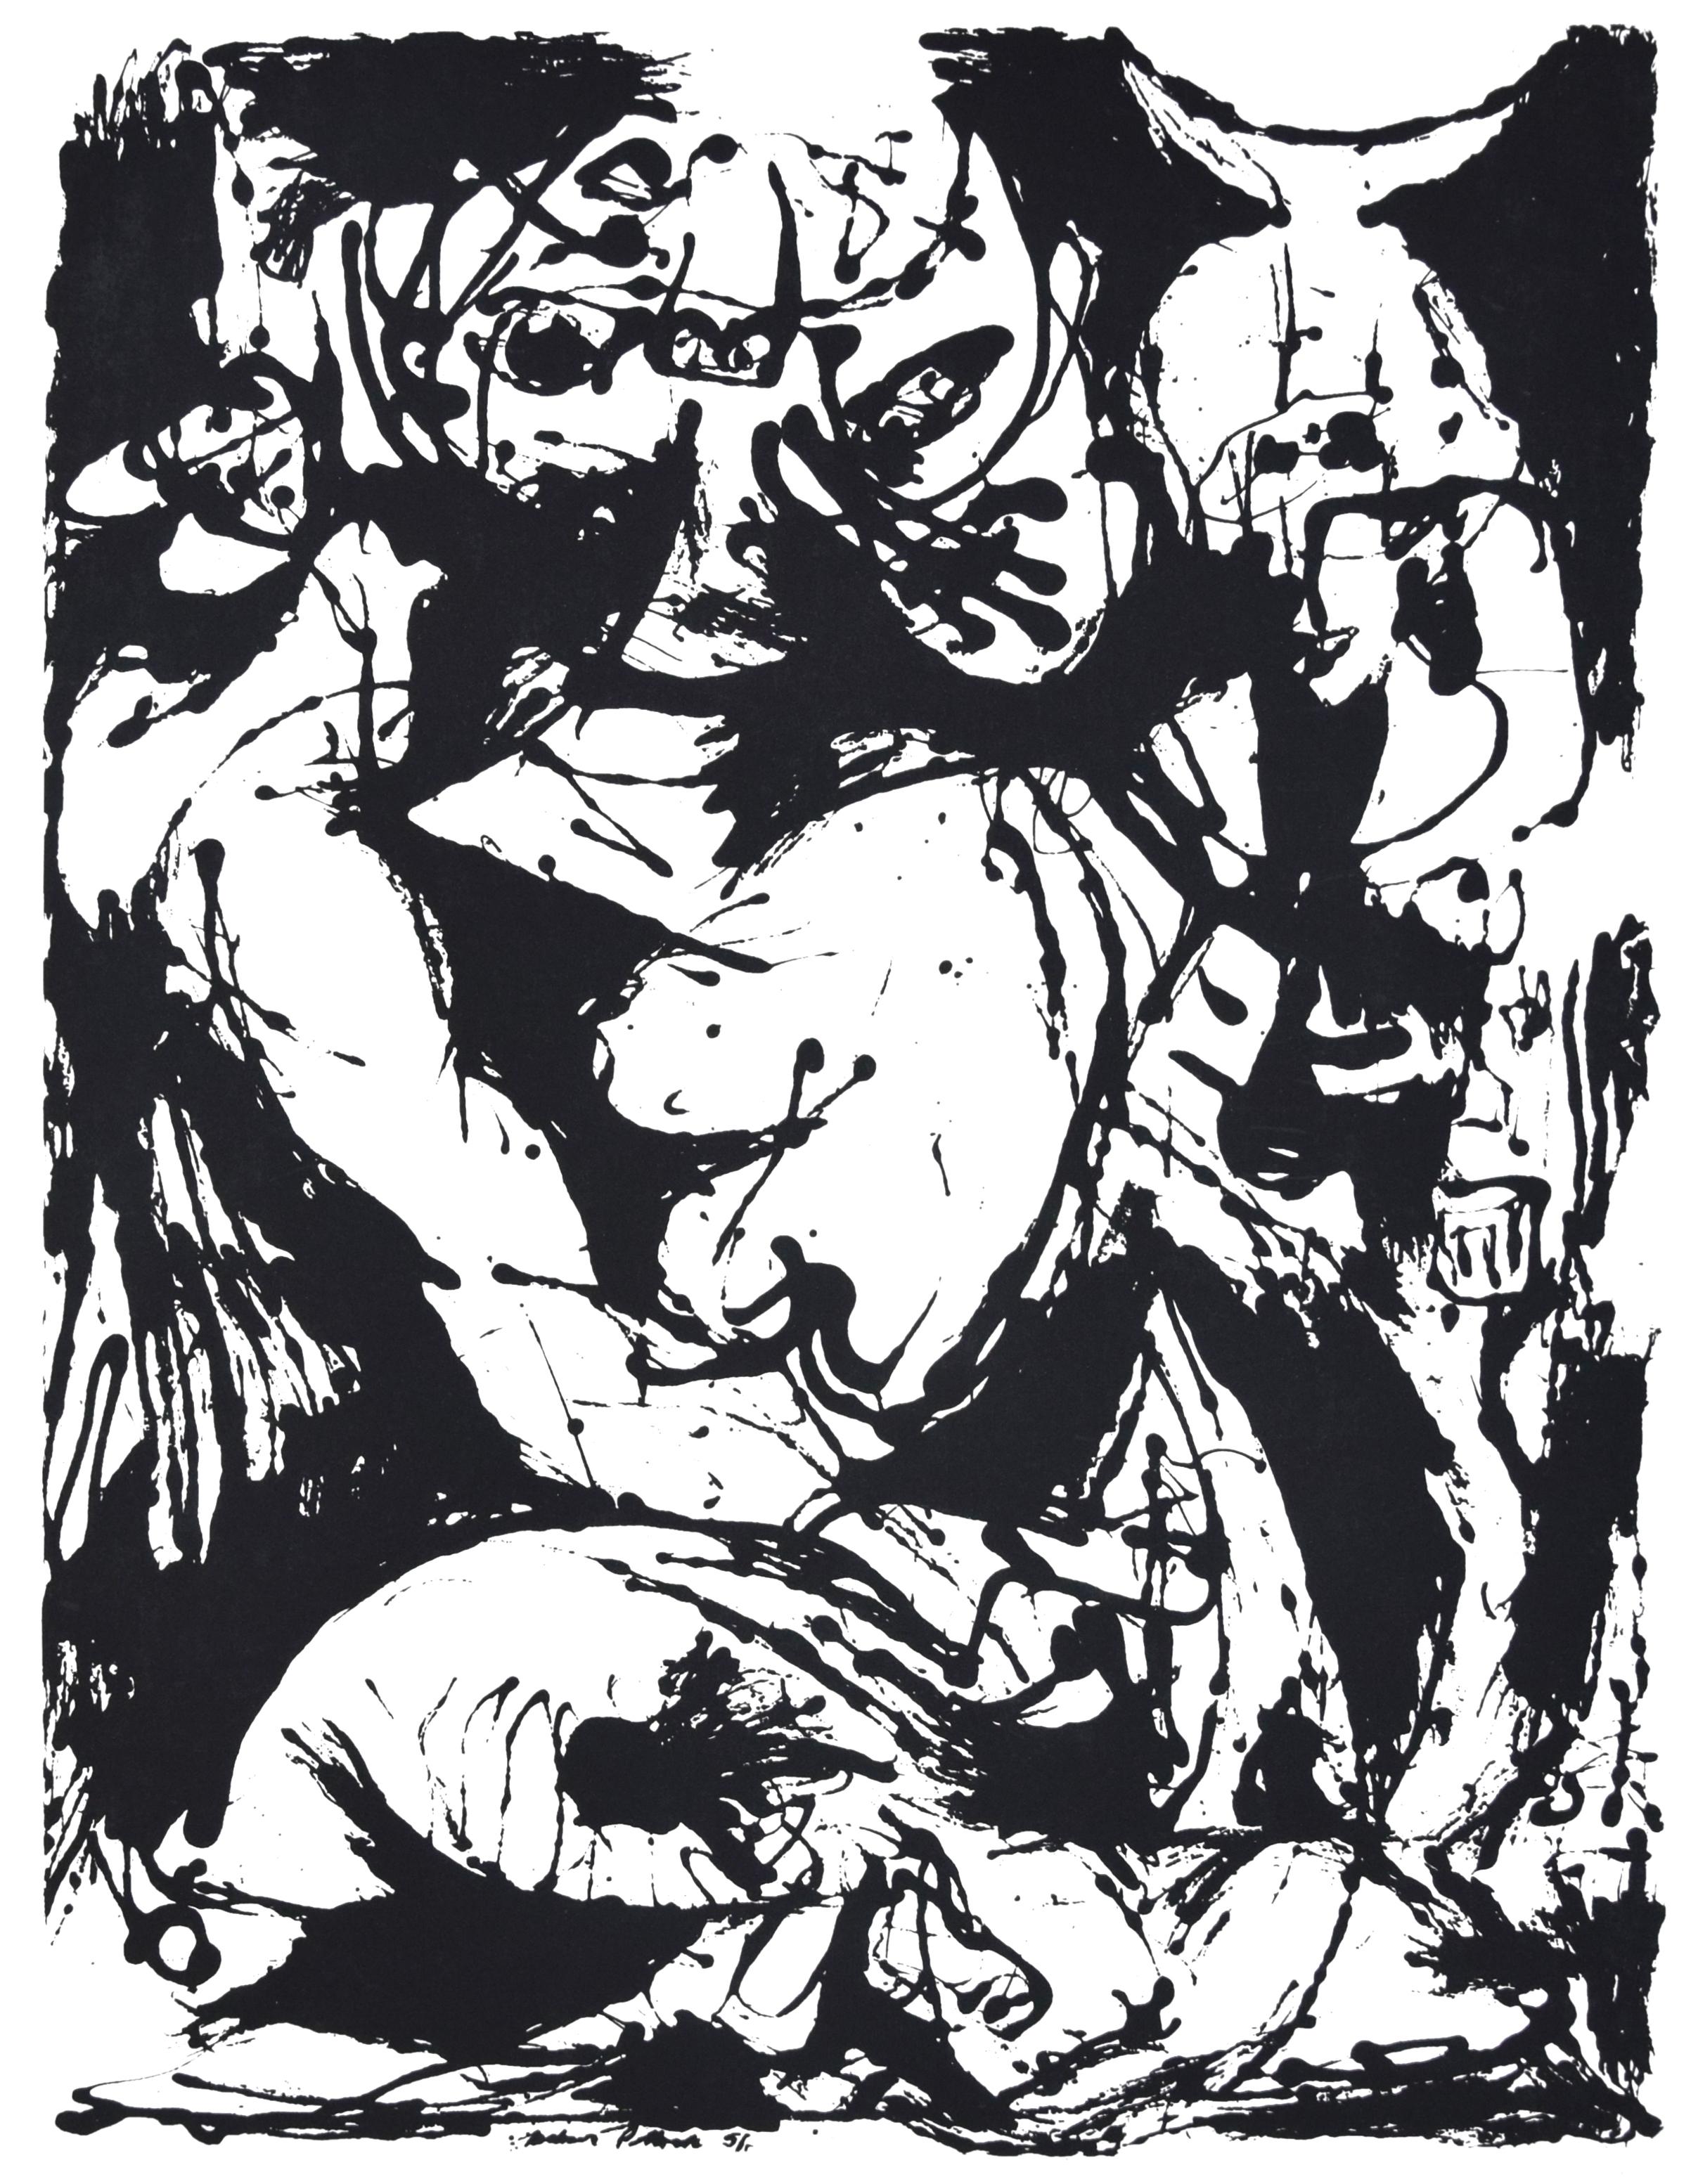 Ohne Titel, CR1095 (nach Gemälde Nummer 22, CR344), 1951, gedruckt 1964 – Print von Jackson Pollock